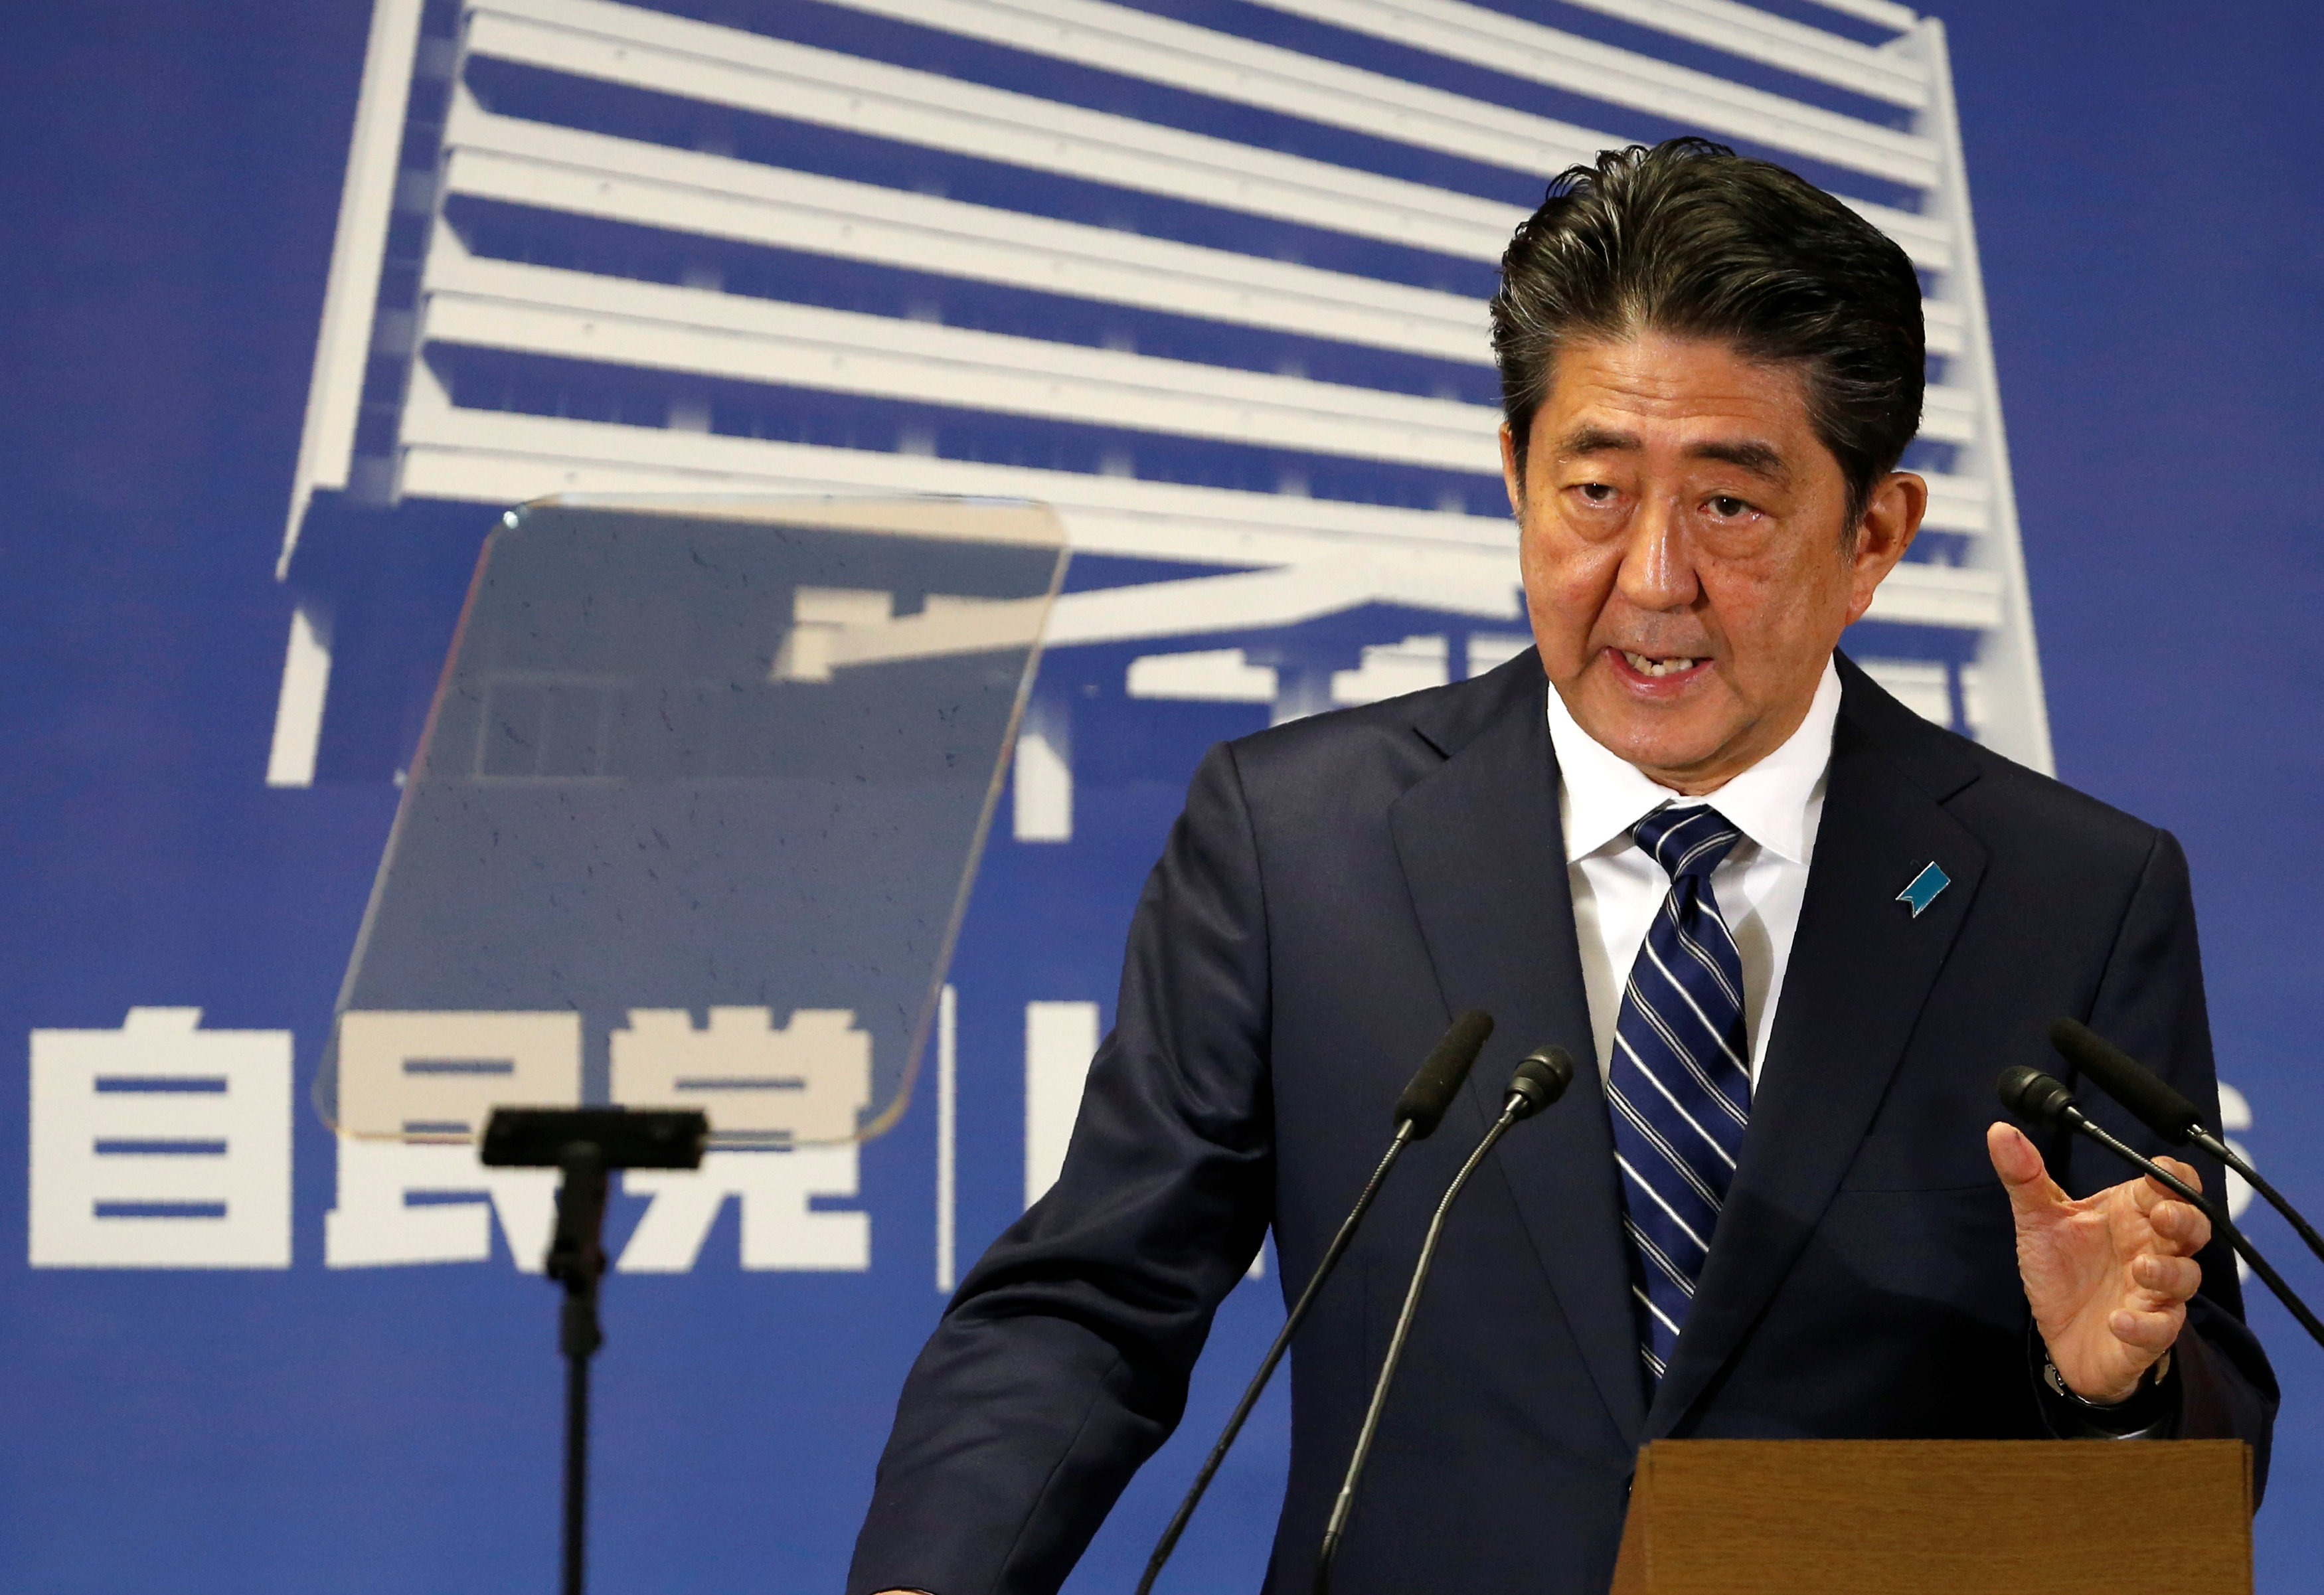 ئيس وزراء اليابان يعلن فوز تحالف الحزب الحاكم فى انتخابات البرلمان